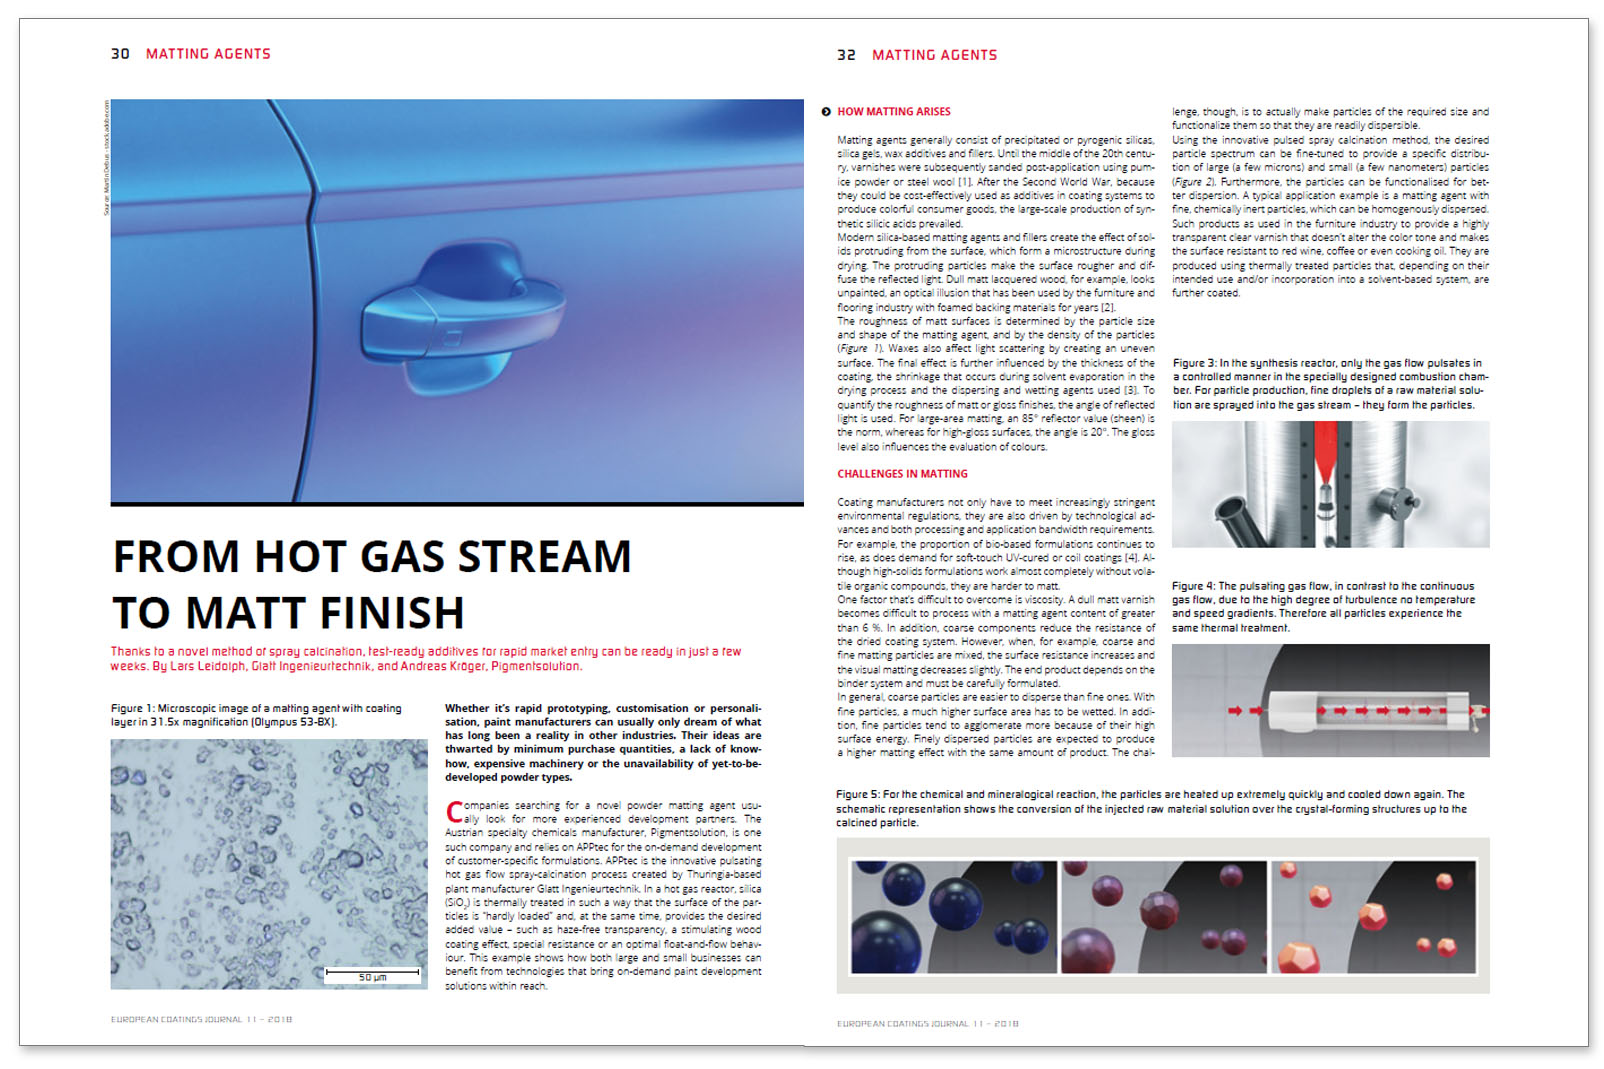 Glatt Fachbeitrag zum Thema ''From hot gas stream to matt finish'', veröffentlicht im Fachmagazin European Coatings Journal, Ausgabe November 2018, Vincentz Network GmbH & Co. KG